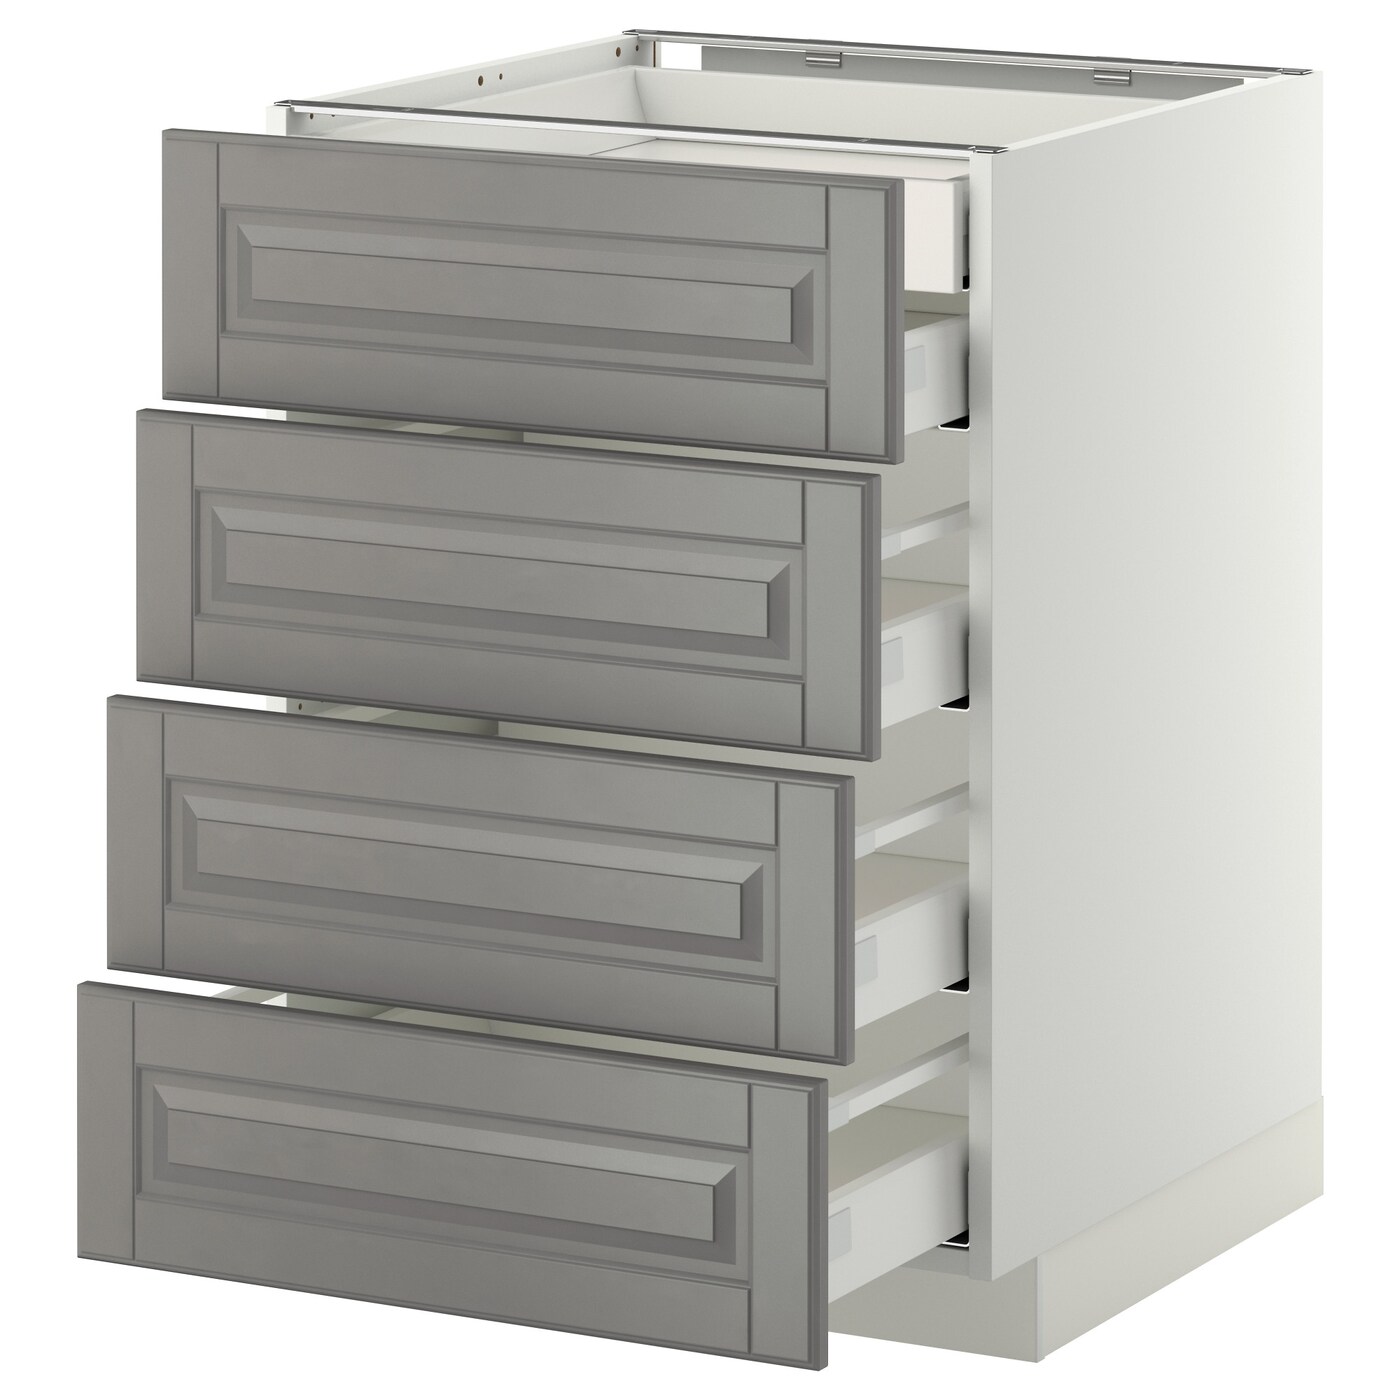 Напольный кухонный шкаф  - IKEA METOD MAXIMERA, 88x61,9x60см, белый/серый, МЕТОД МАКСИМЕРА ИКЕА